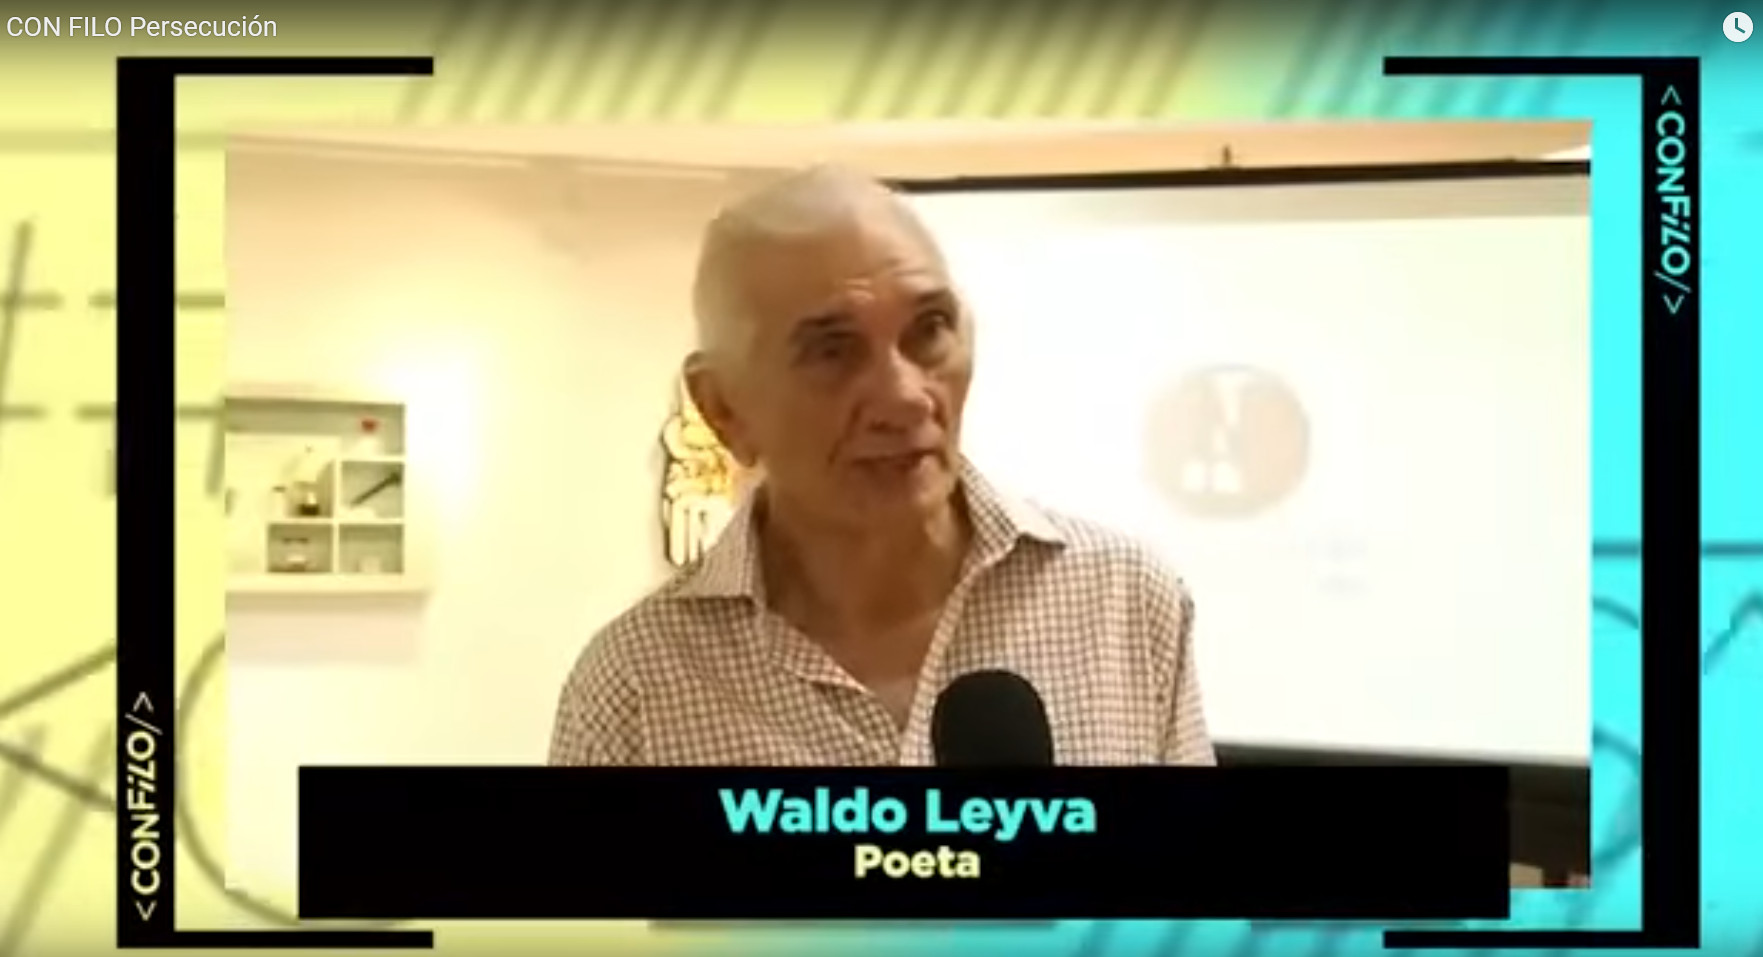 Valdo Leva - Poeta